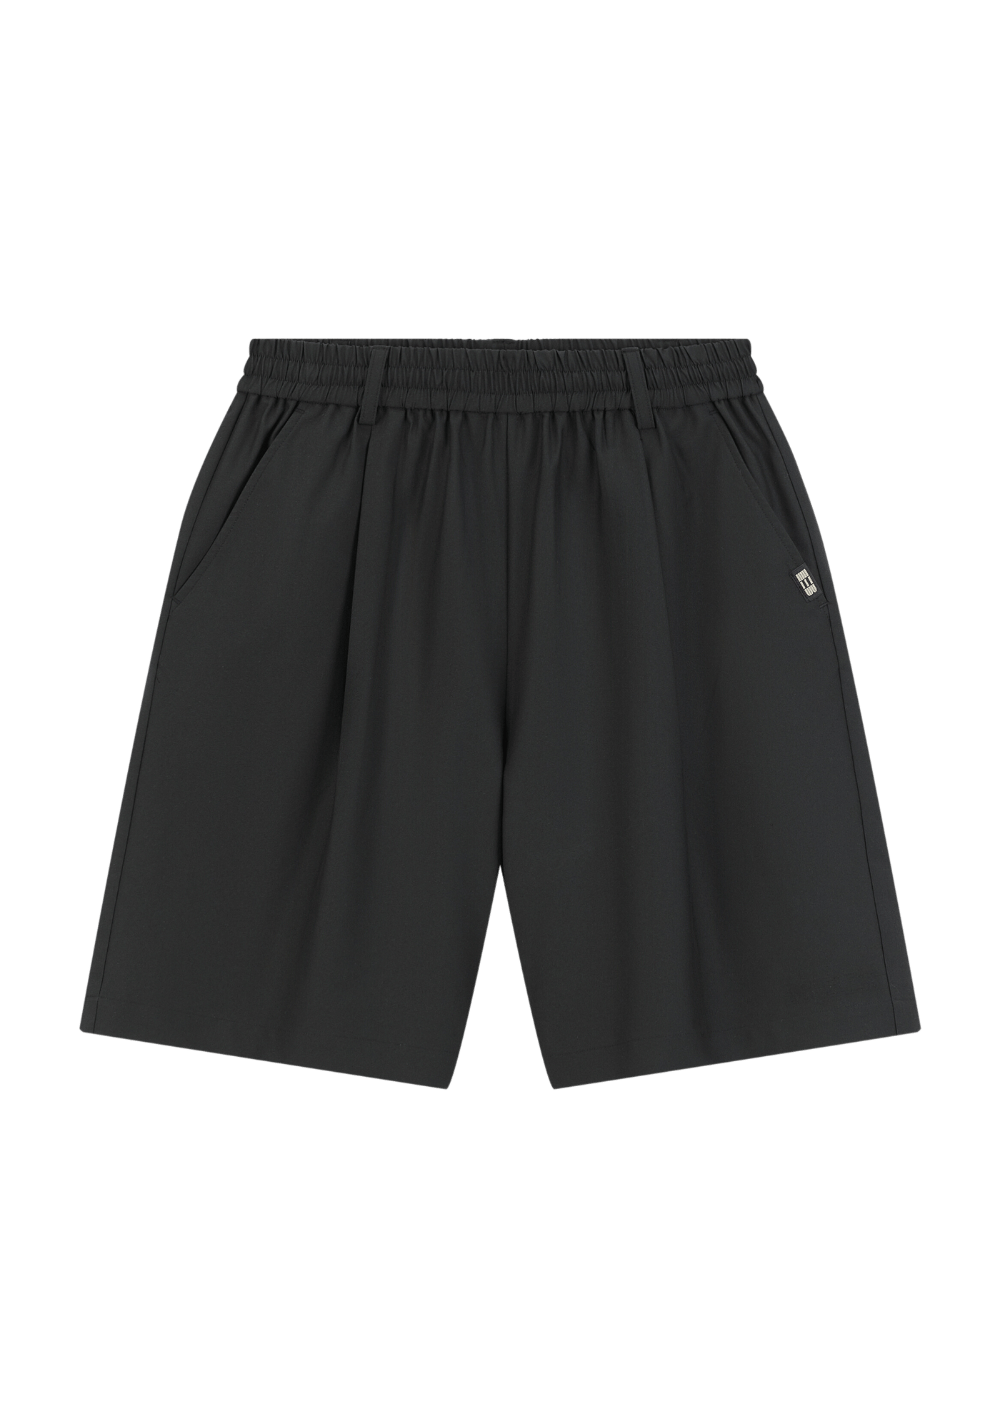 Elastic Waist Single Pleat Shorts - PSYLOS 1, Elastic Waist Single Pleat Shorts, Shorts, Boneless, PSYLOS 1